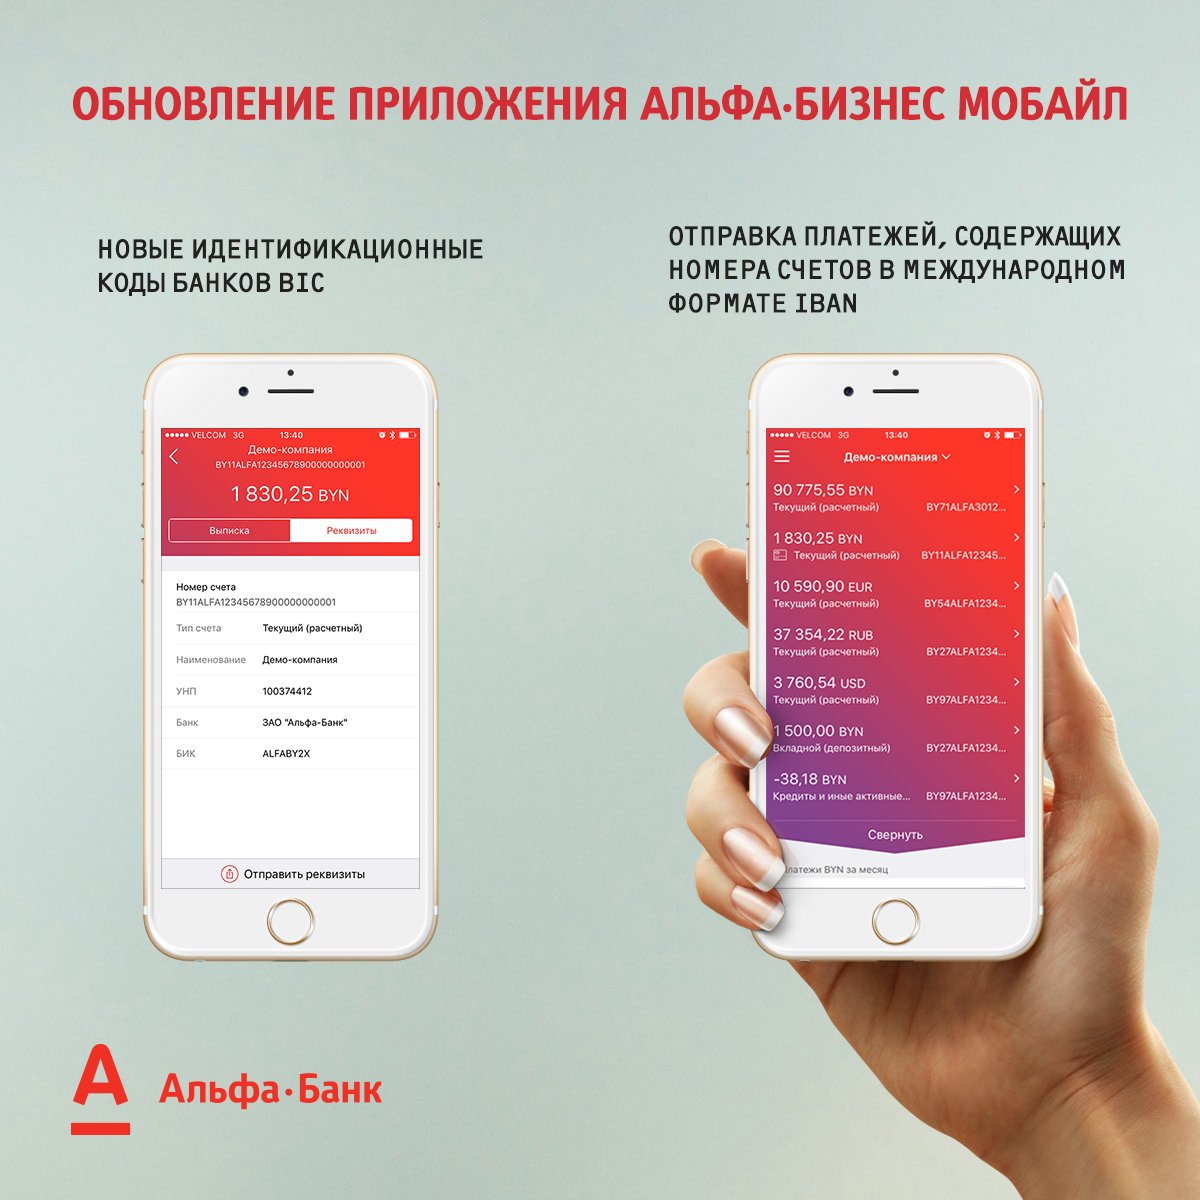 Альфа банк последний версия обновить приложение. Мобильное приложение Альфа банка. Интерфейс приложения Альфа банка. Мобильный банк Альфа-мобайл. Мобильные приложения банков.